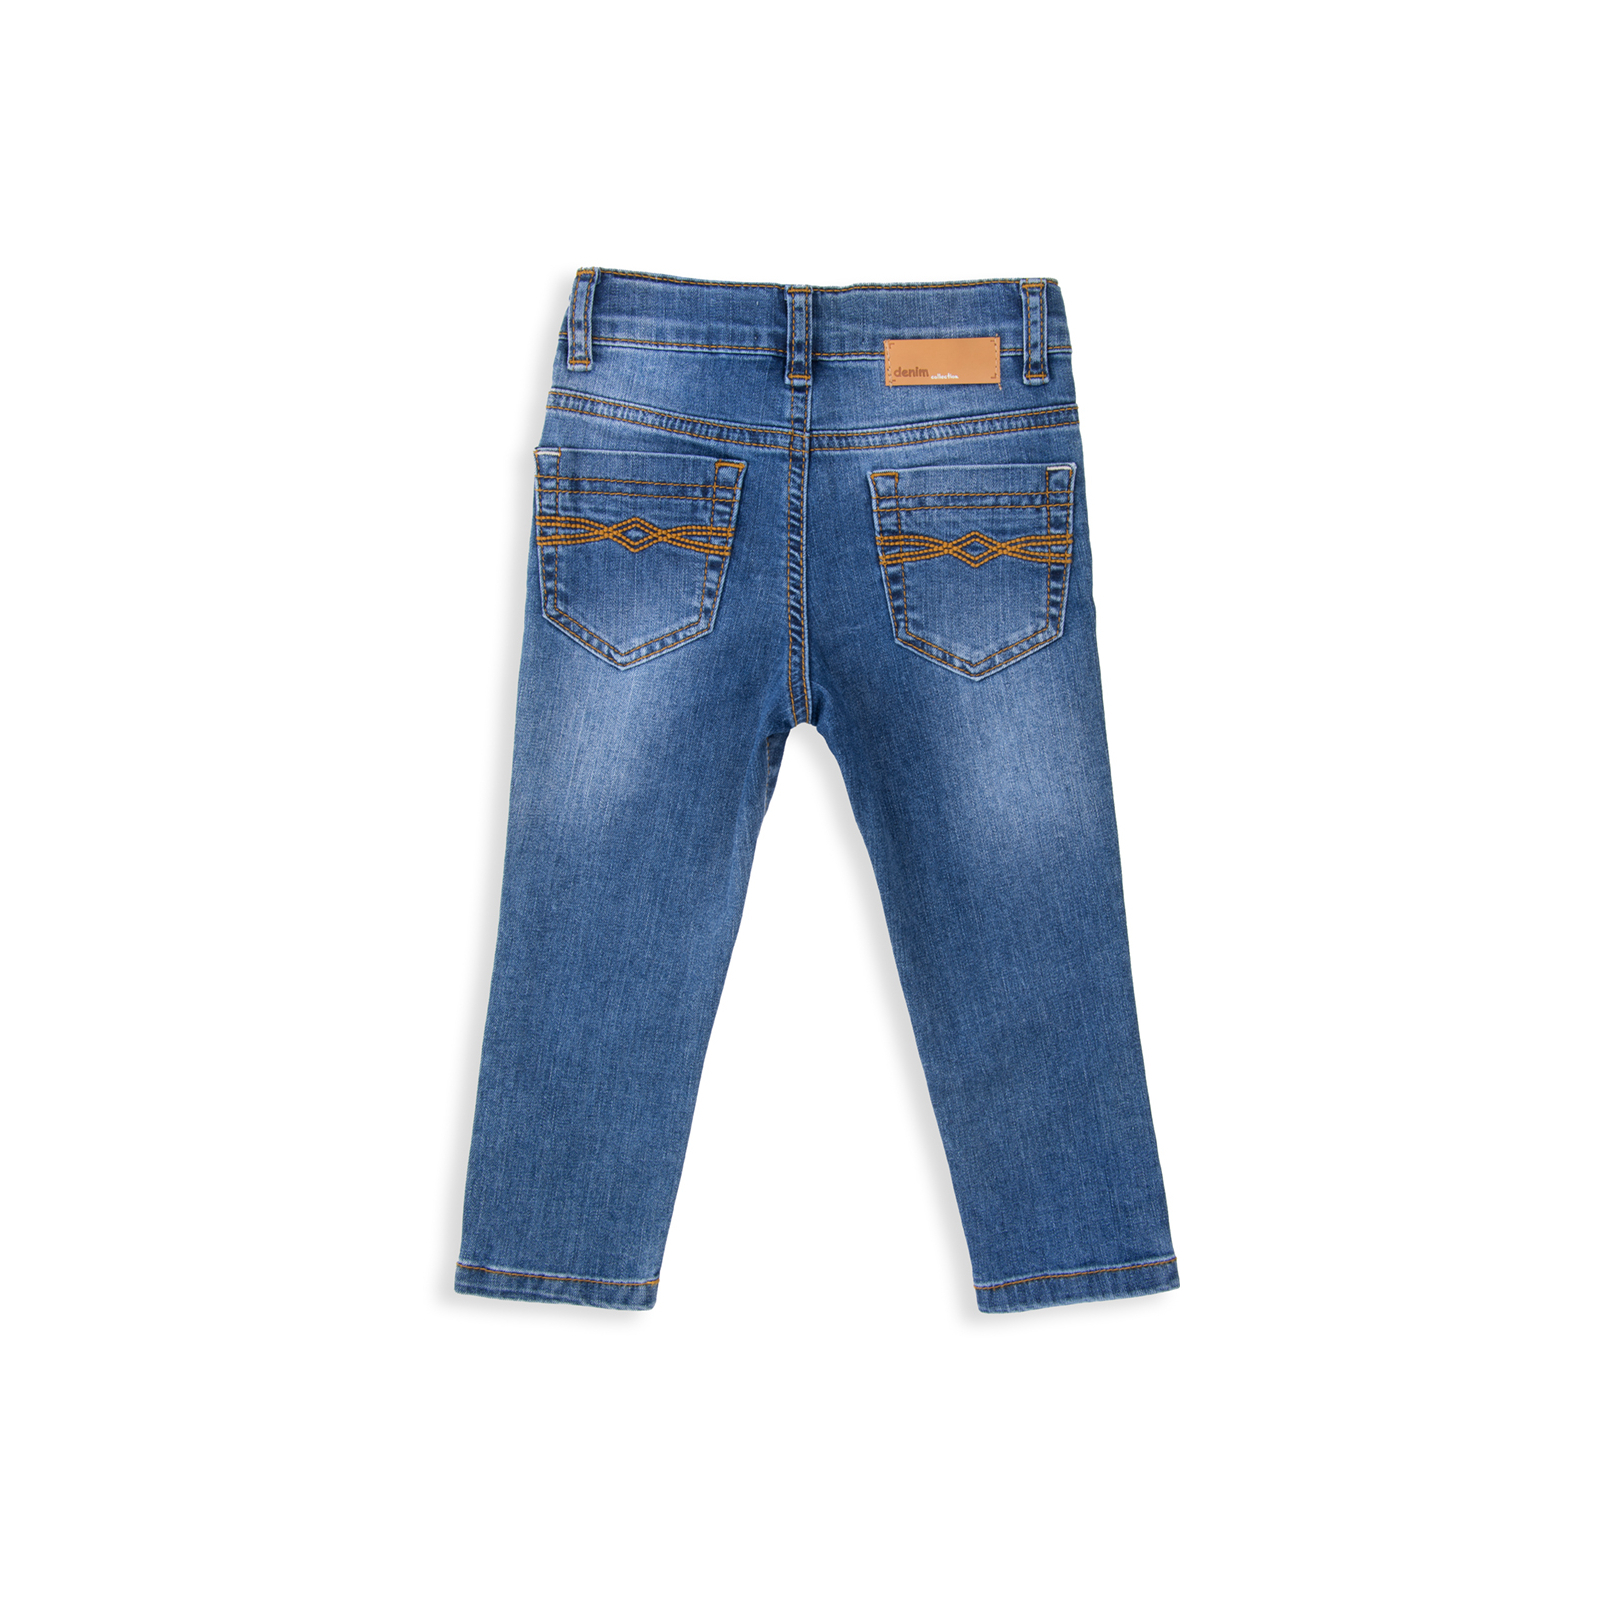 Джинсы Breeze синие (15YECPAN371-92B-jeans) изображение 2